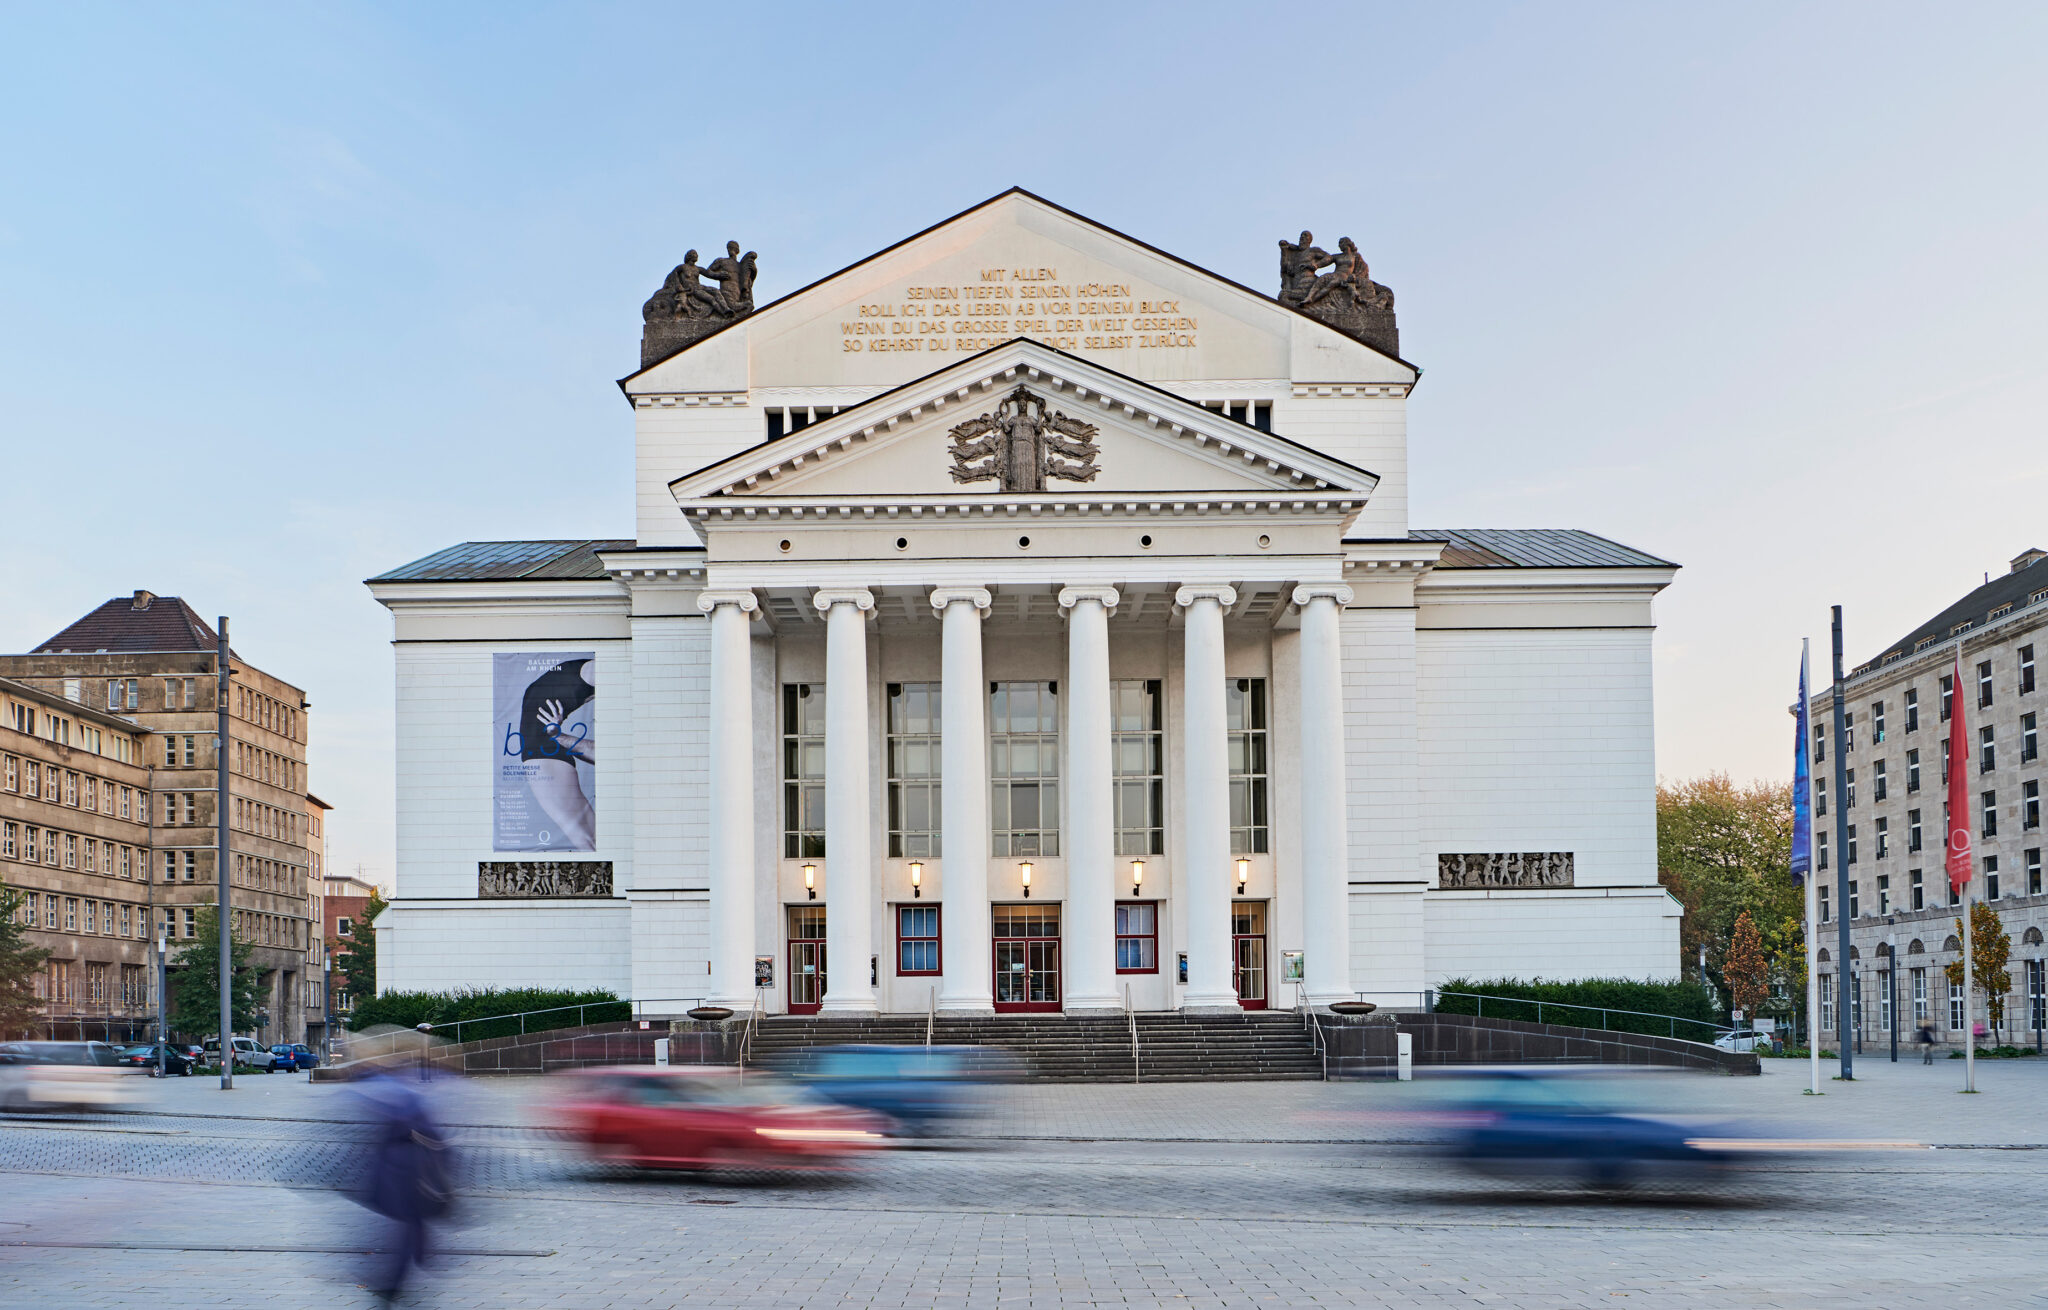 Theater Duisburg – Deutsche Oper am Rhein